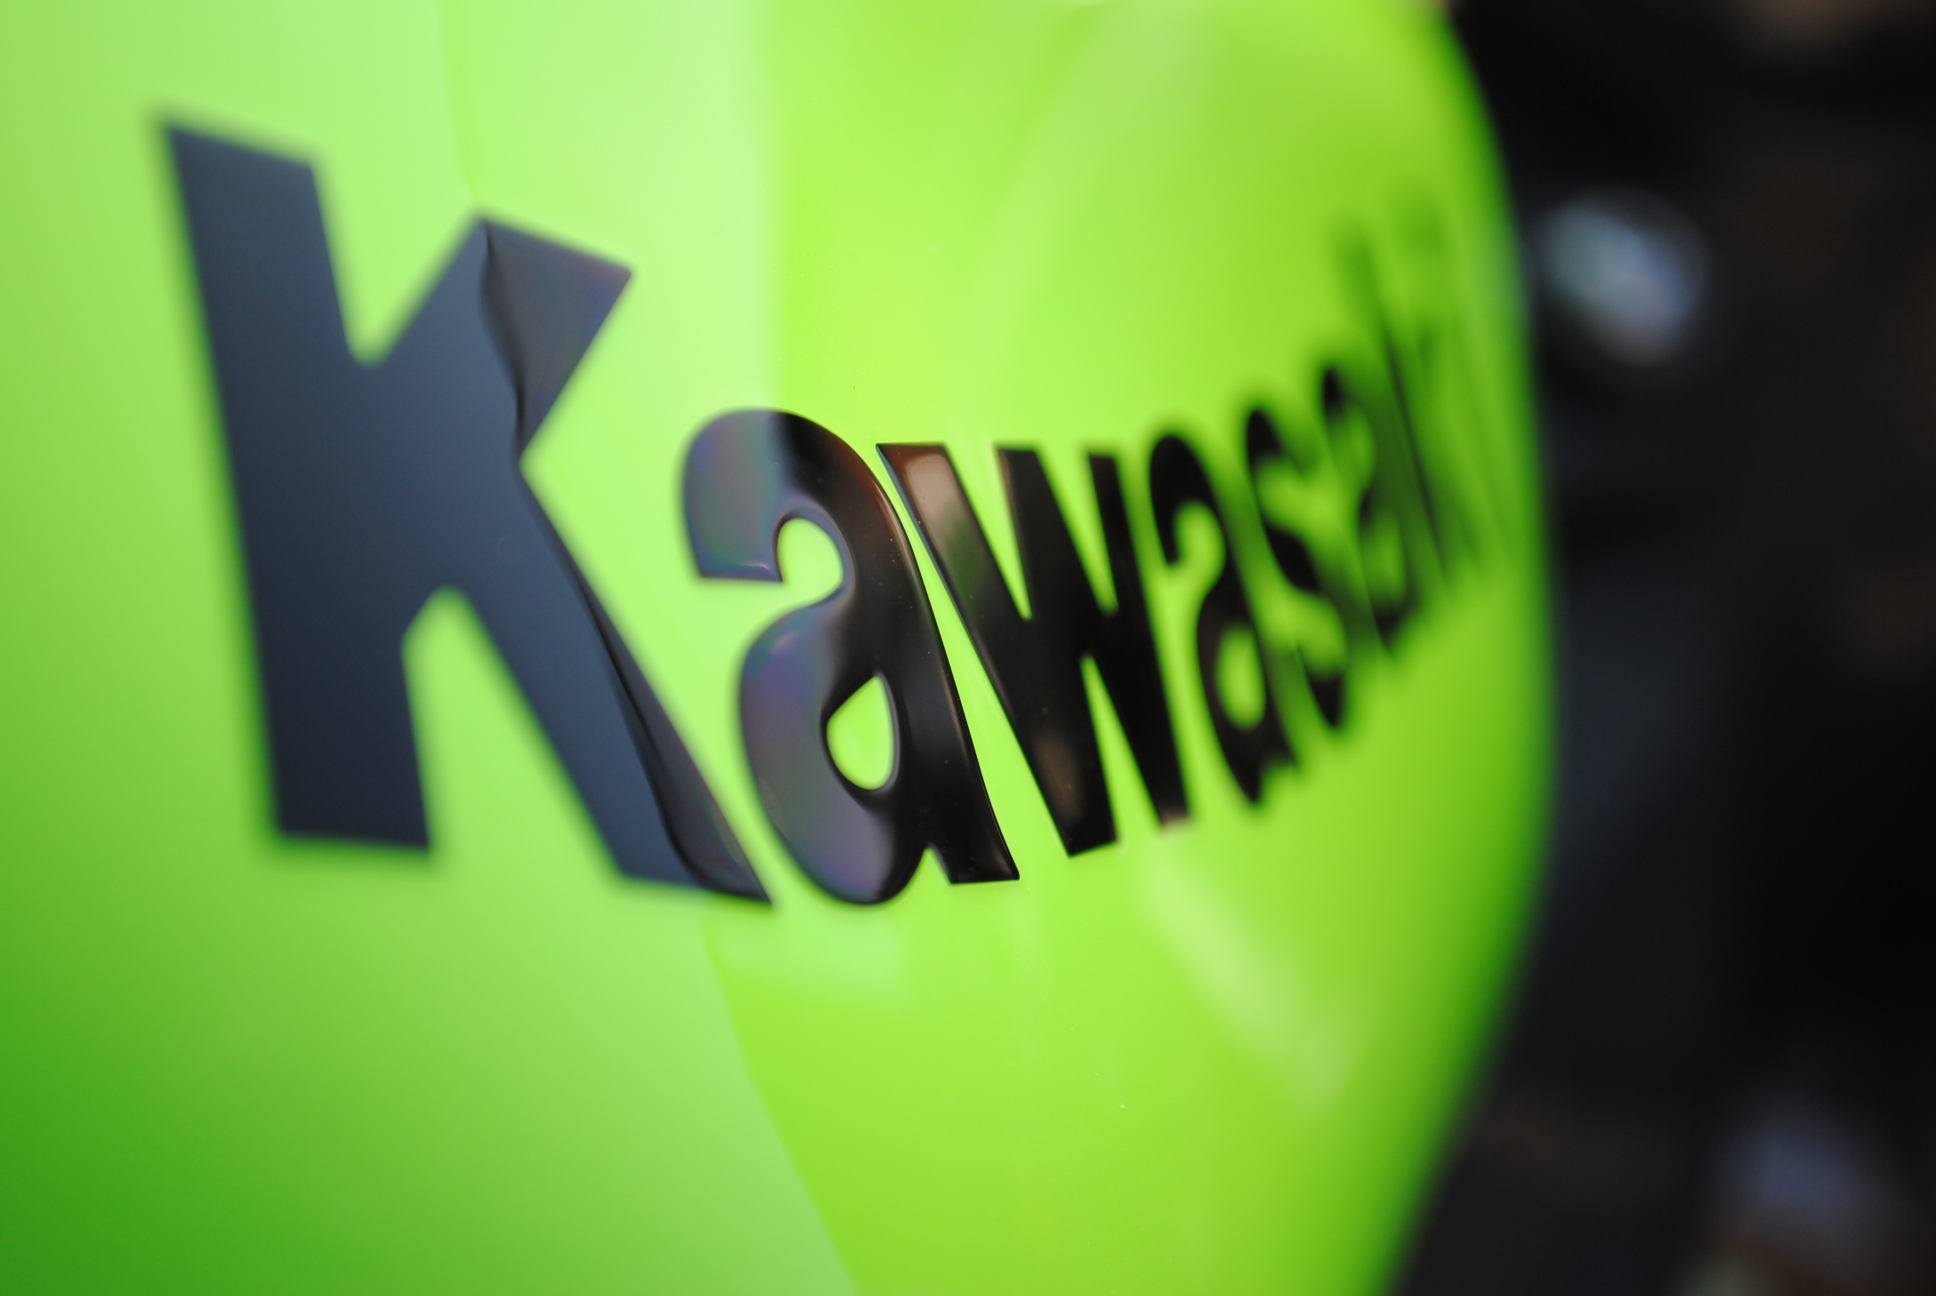 kawasaki logo wallpaper,green,yellow,logo,font,graphics